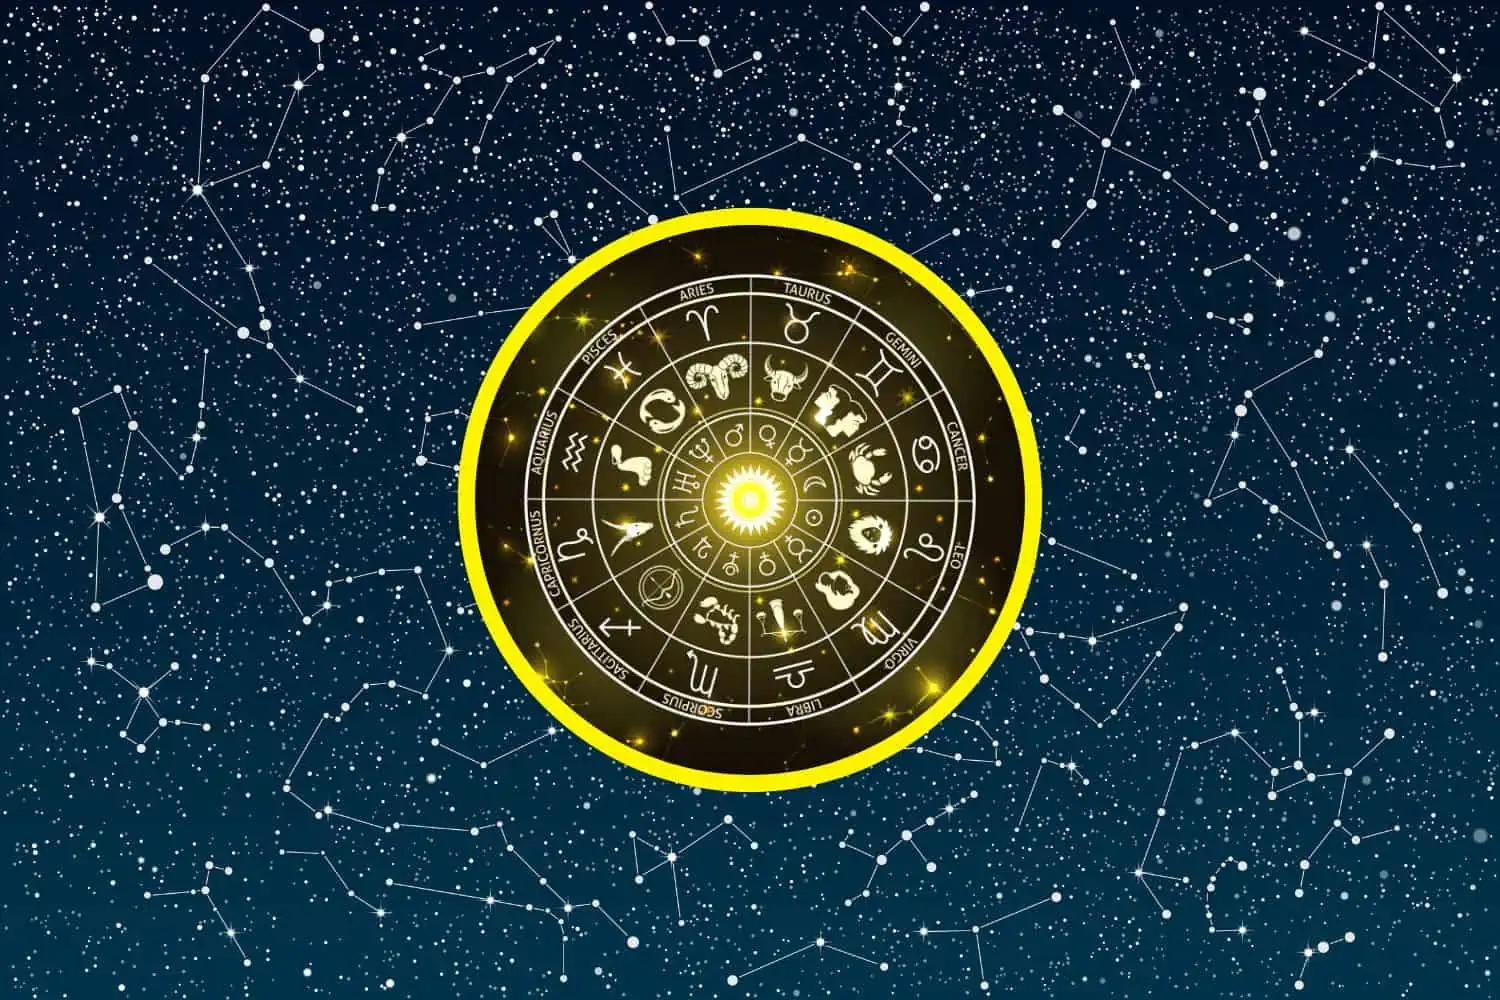 Today’s Free Horoscopes Wednesday 25 January 2023